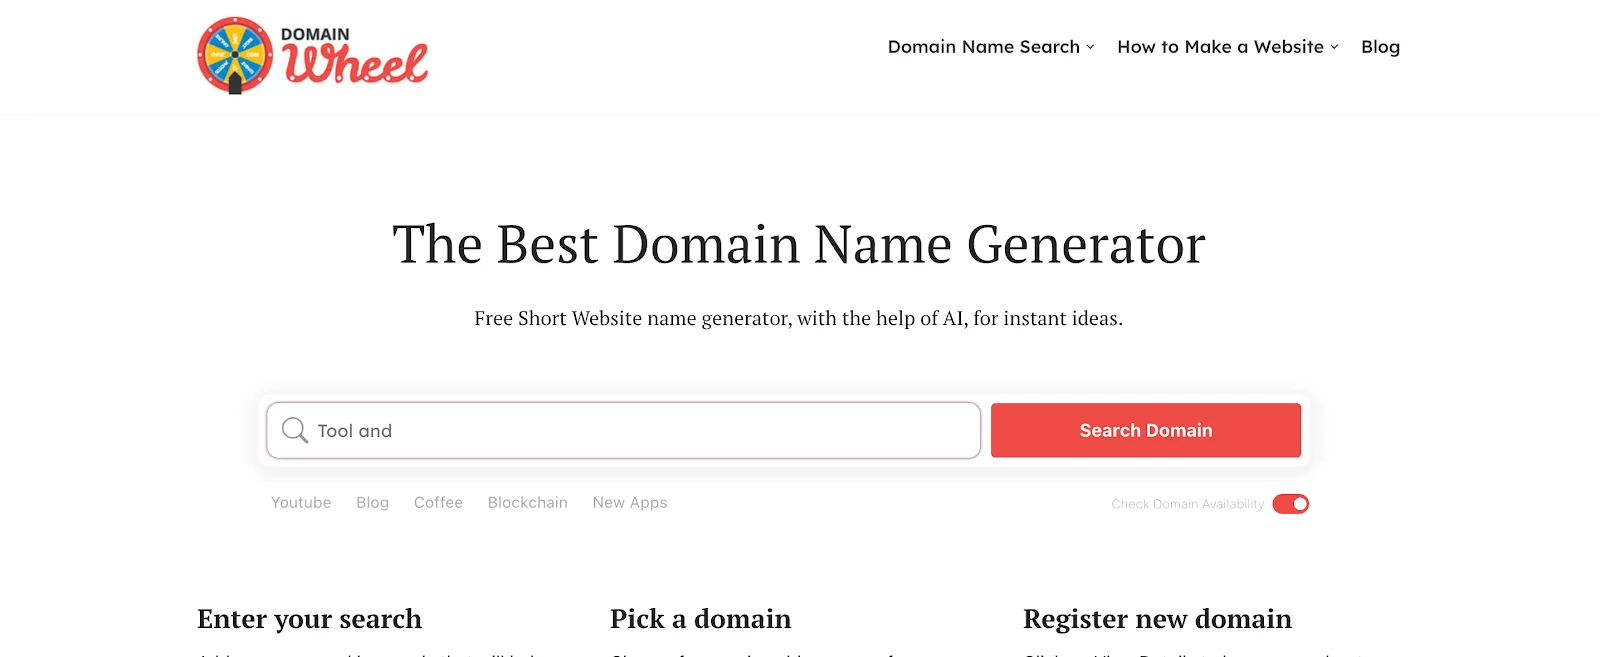 Domain Wheel Business Name Generator